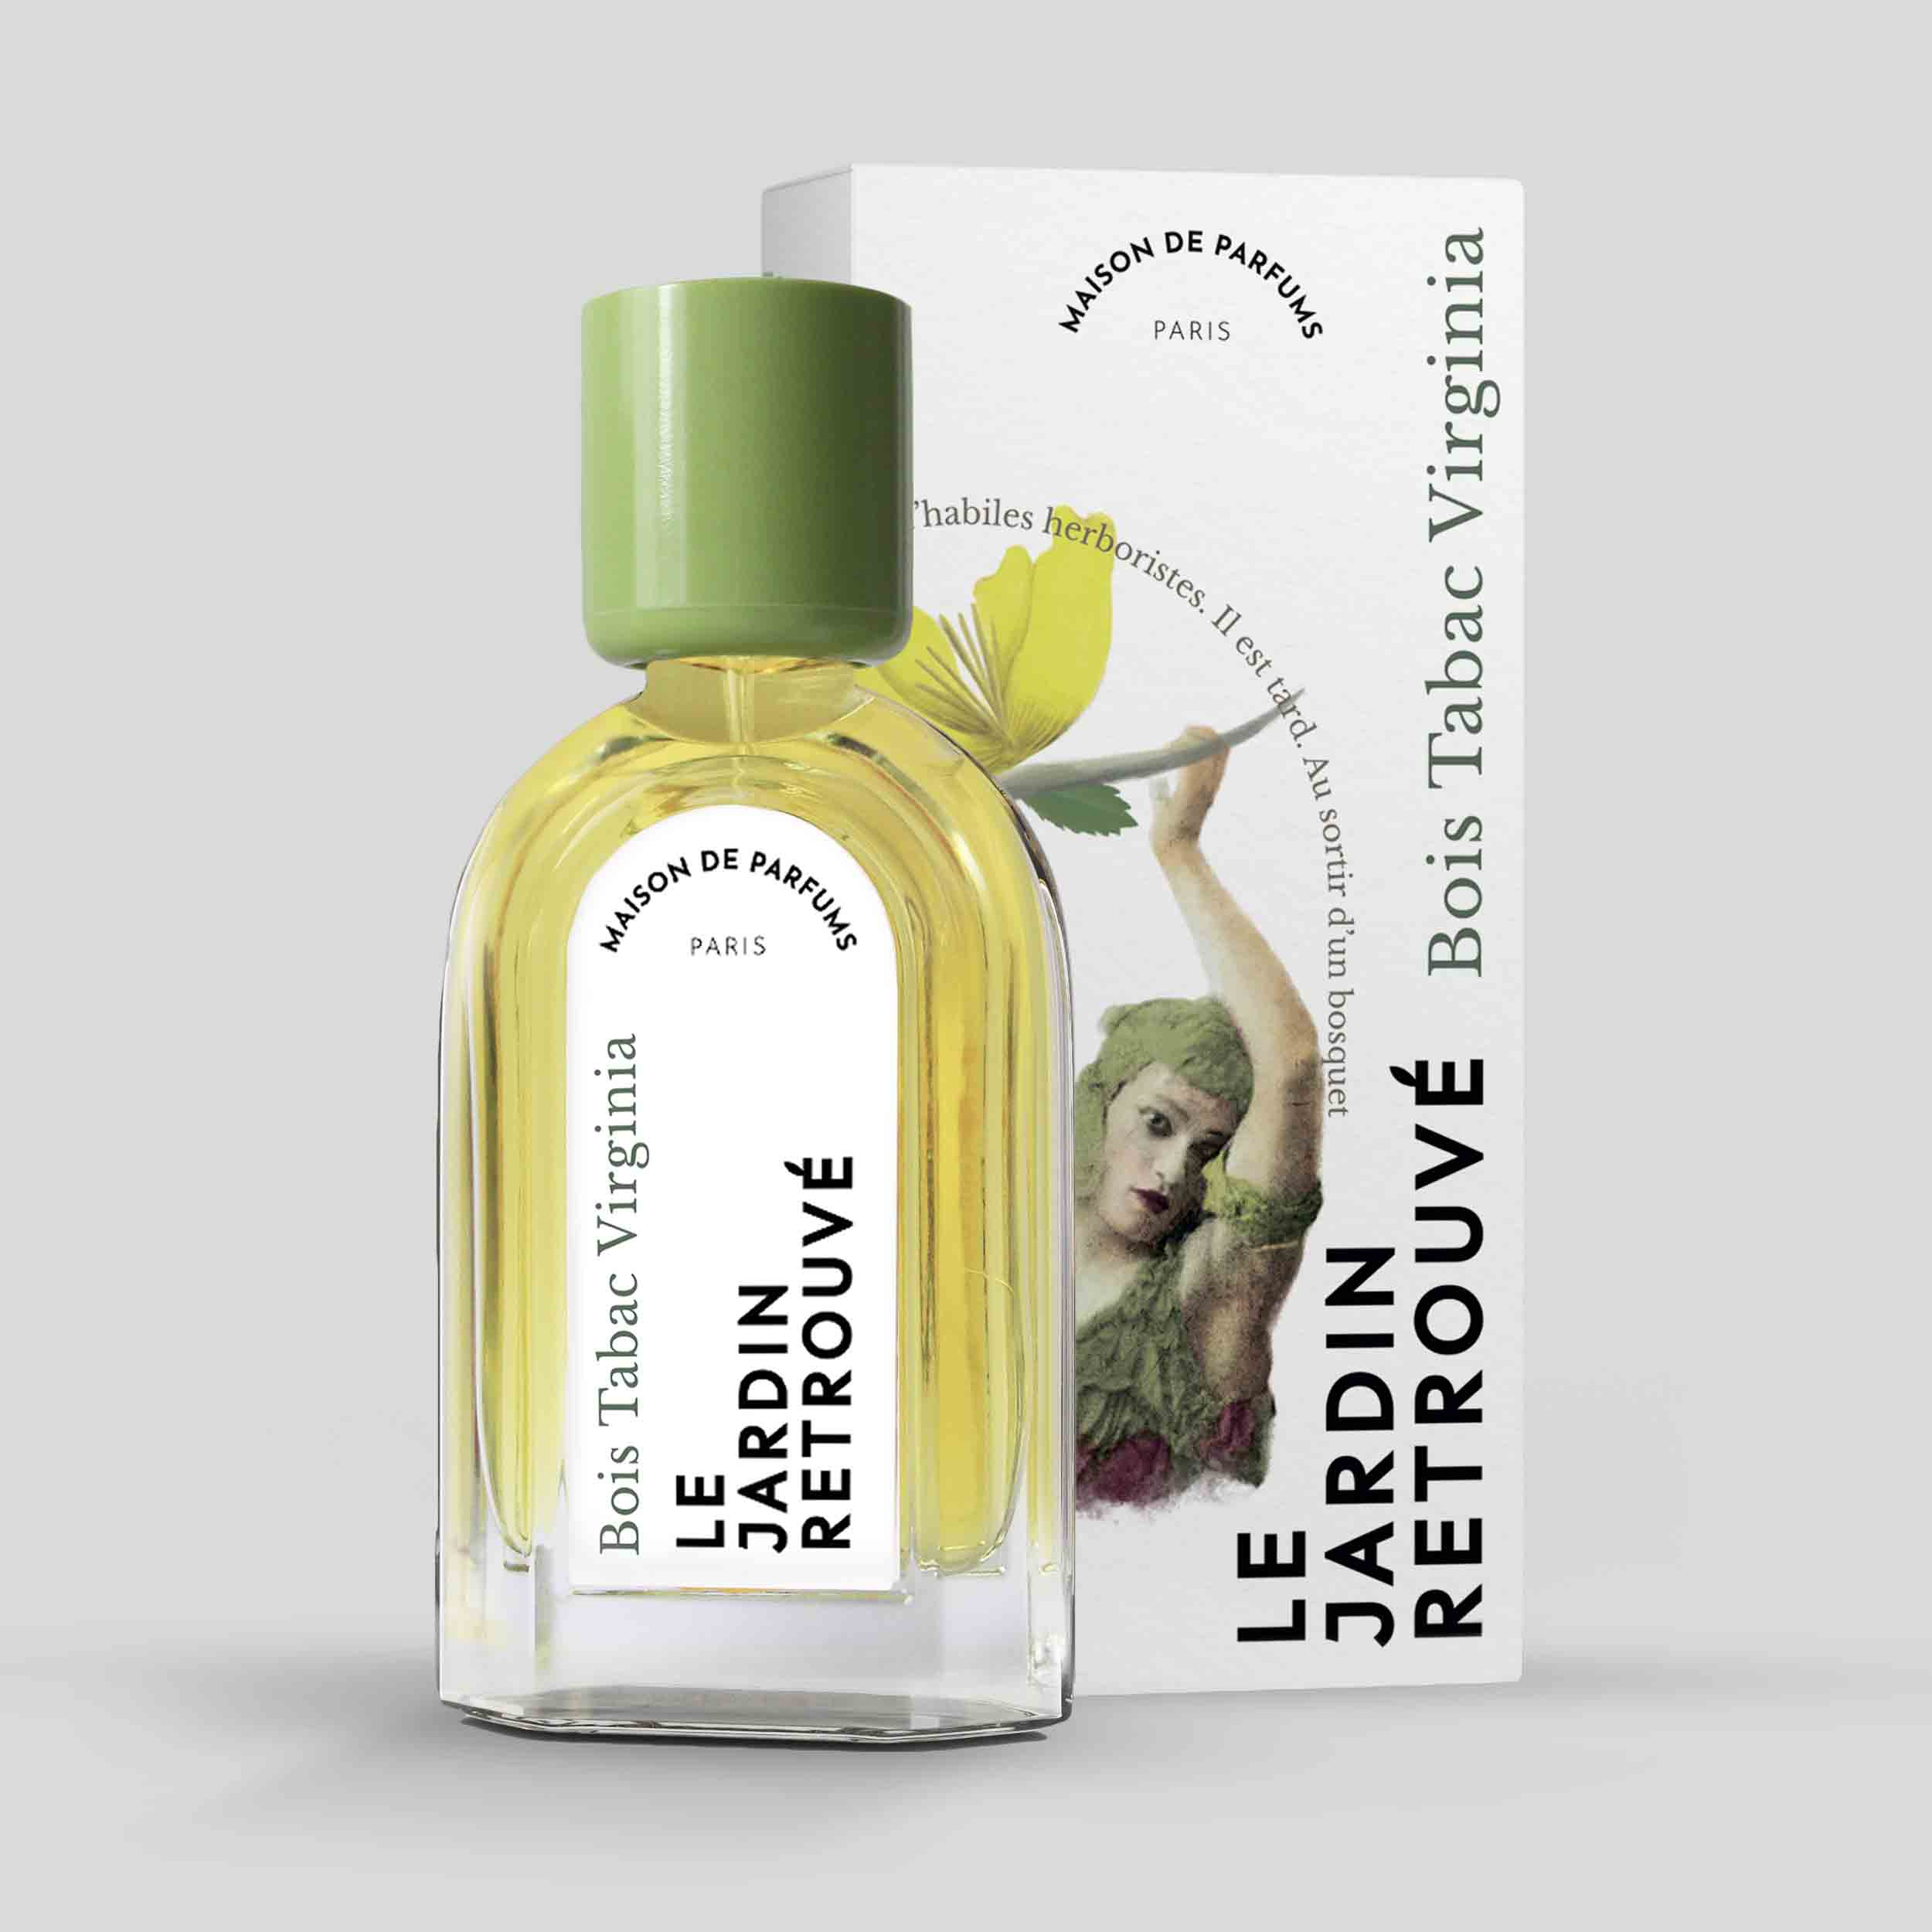 Bois Tabac Virginia Eau de Parfum 50ml Bottle and Box by Le Jardin Retrouvé